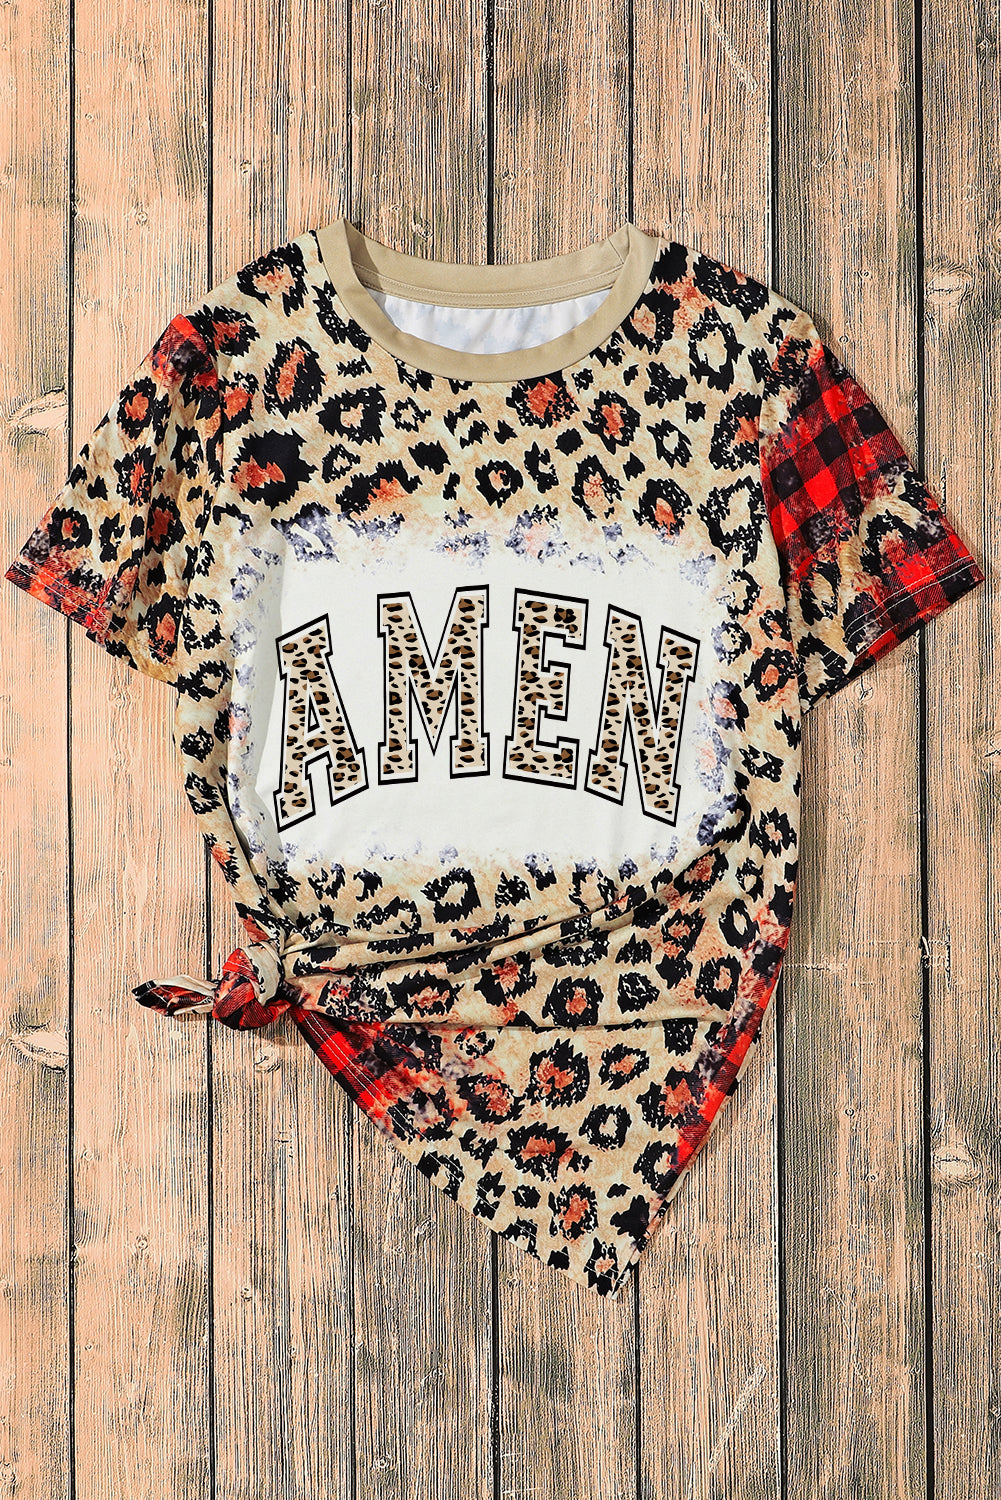 Leopard Plaid Blended AMEN Letter Graphic T Shirt